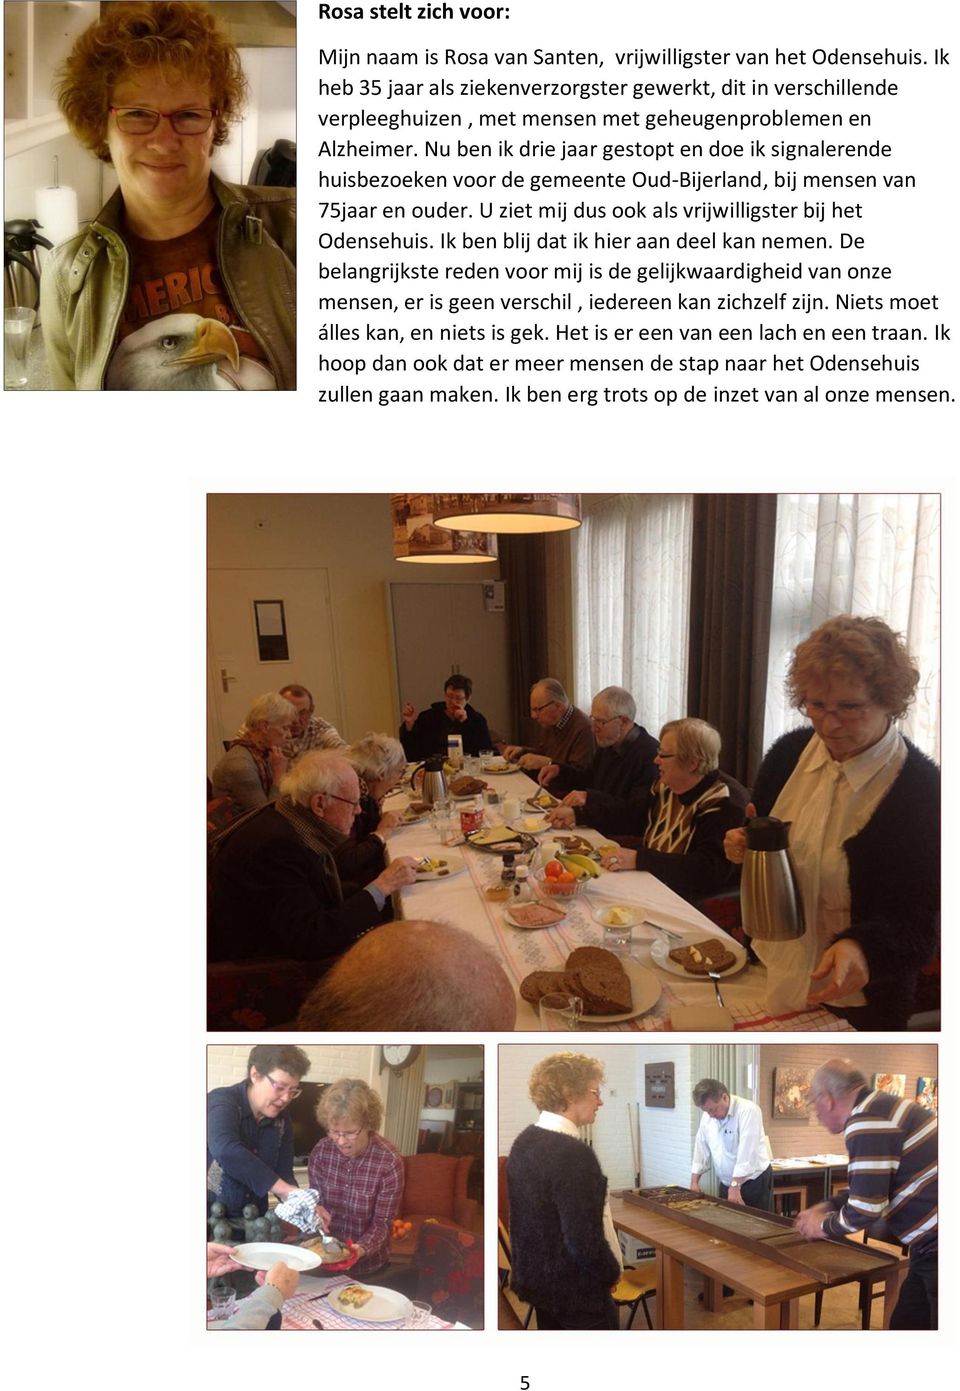 Nu ben ik drie jaar gestopt en doe ik signalerende huisbezoeken voor de gemeente Oud-Bijerland, bij mensen van 75jaar en ouder. U ziet mij dus ook als vrijwilligster bij het Odensehuis.